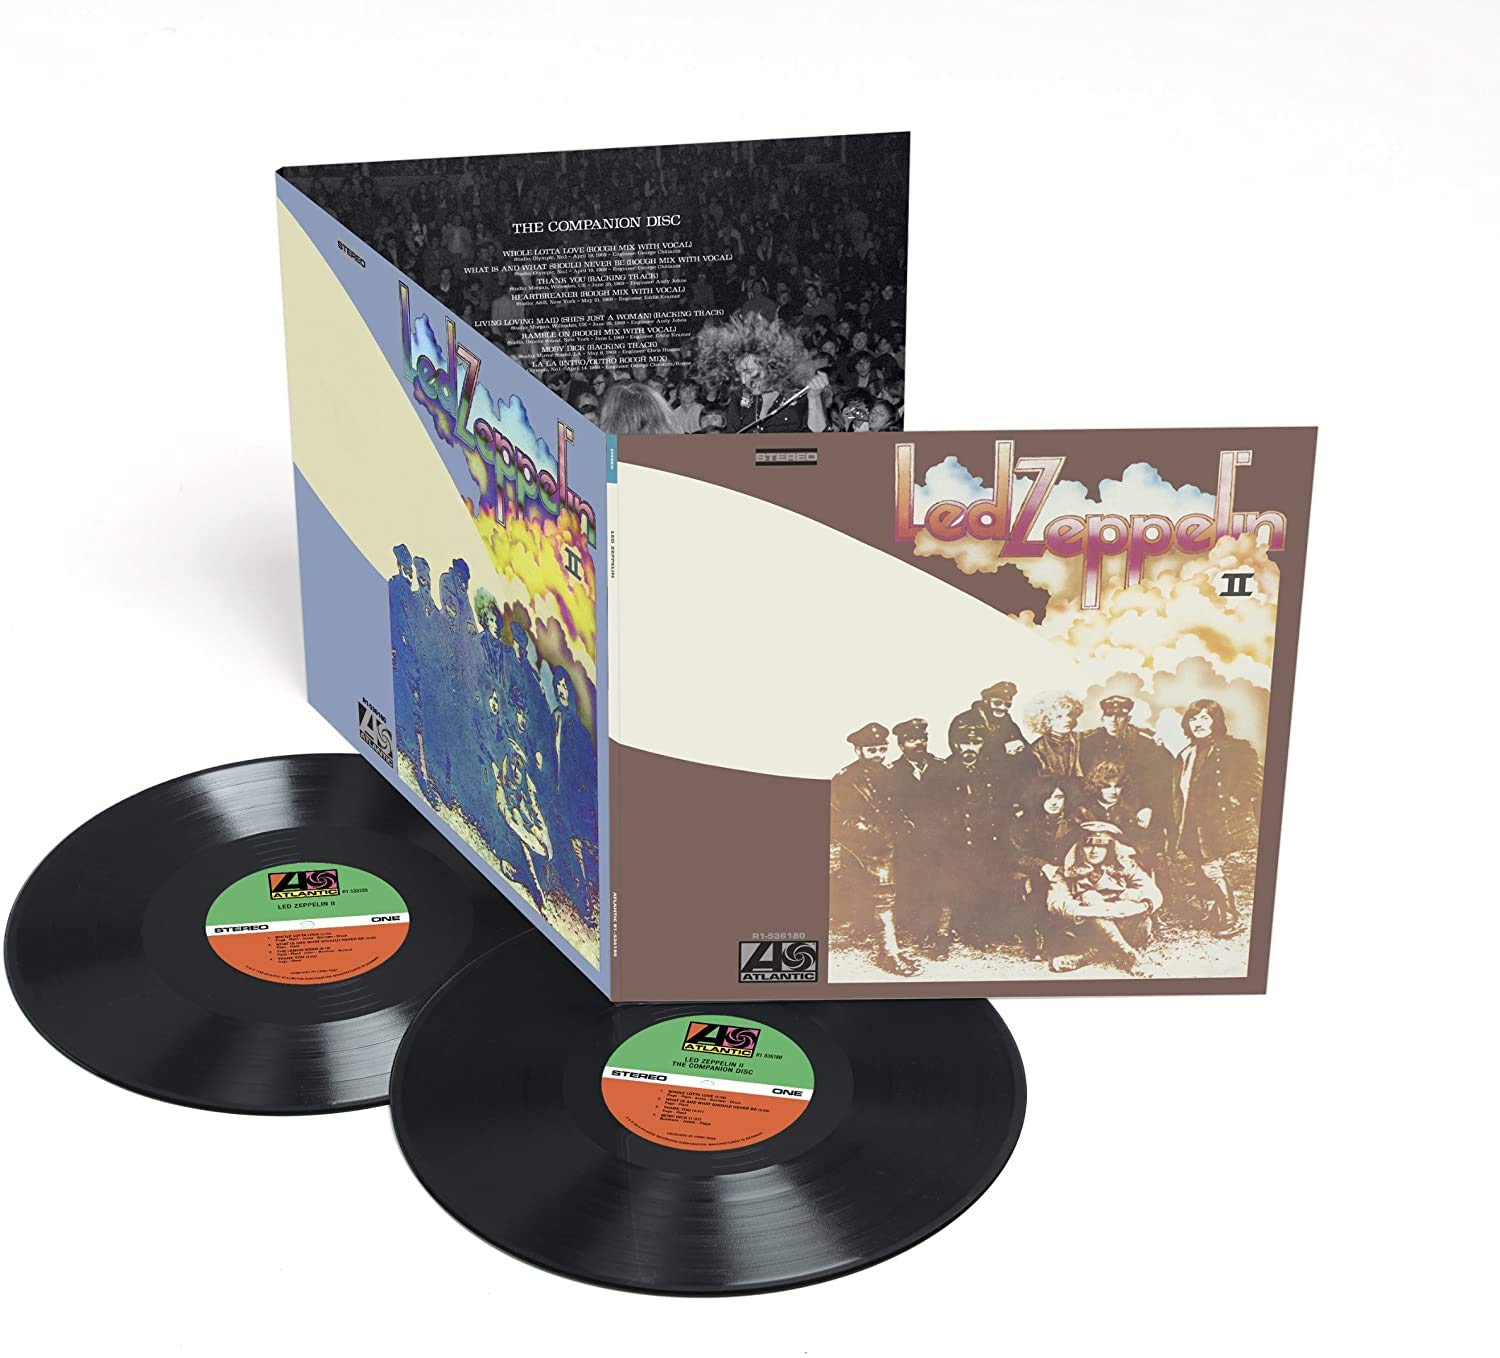 Led Zeppelin 2 (Vinyl) on MovieShack